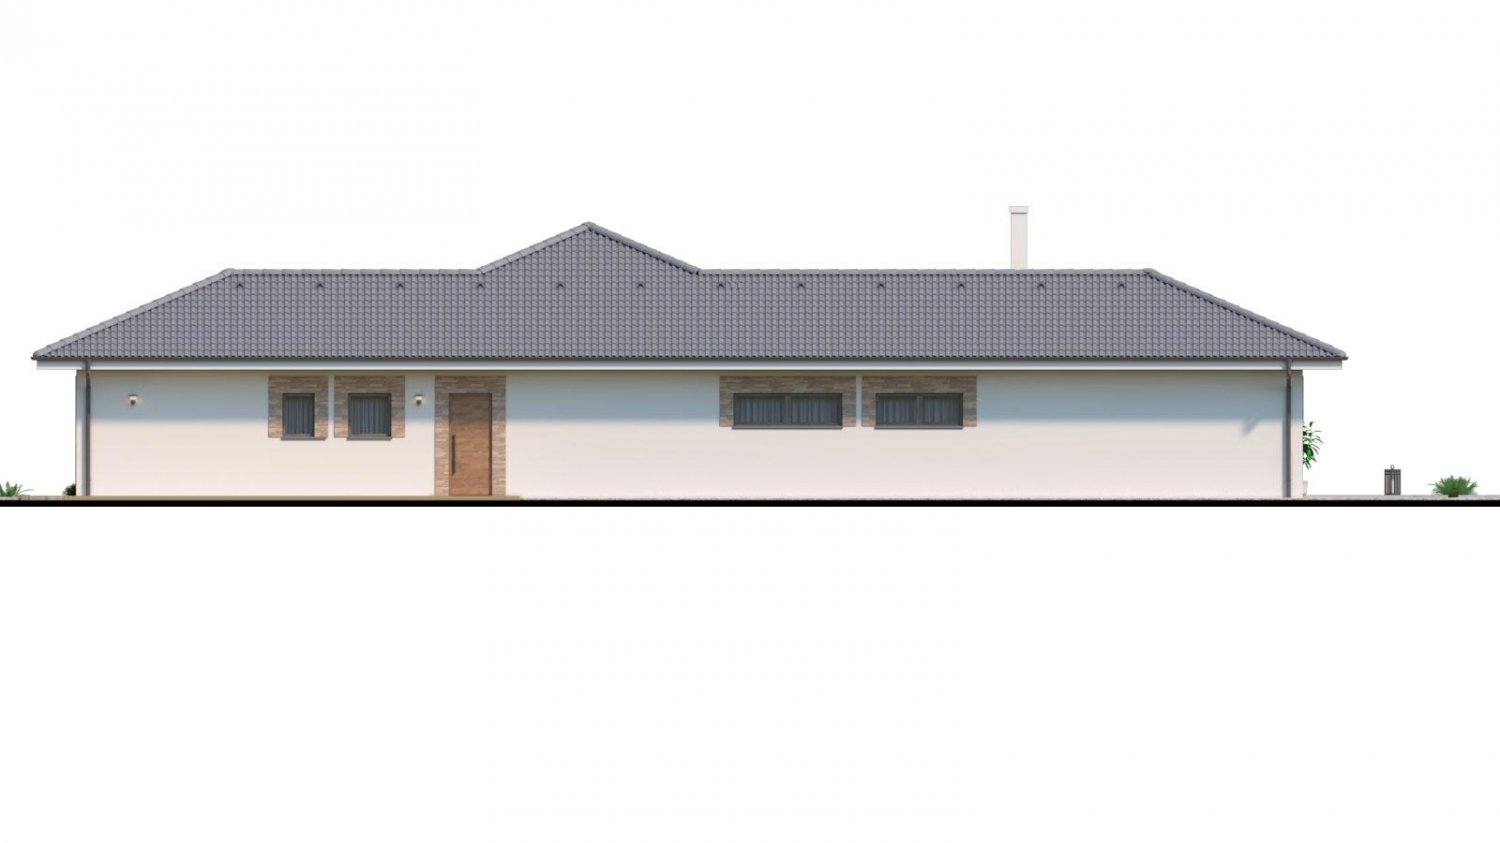 Zrkadlový pohľad 2. - Dům roku 2018 - projekt zděného domu do tvaru L s atriem, dvojgaráží a možností přistavět navíc 2 pokoje.